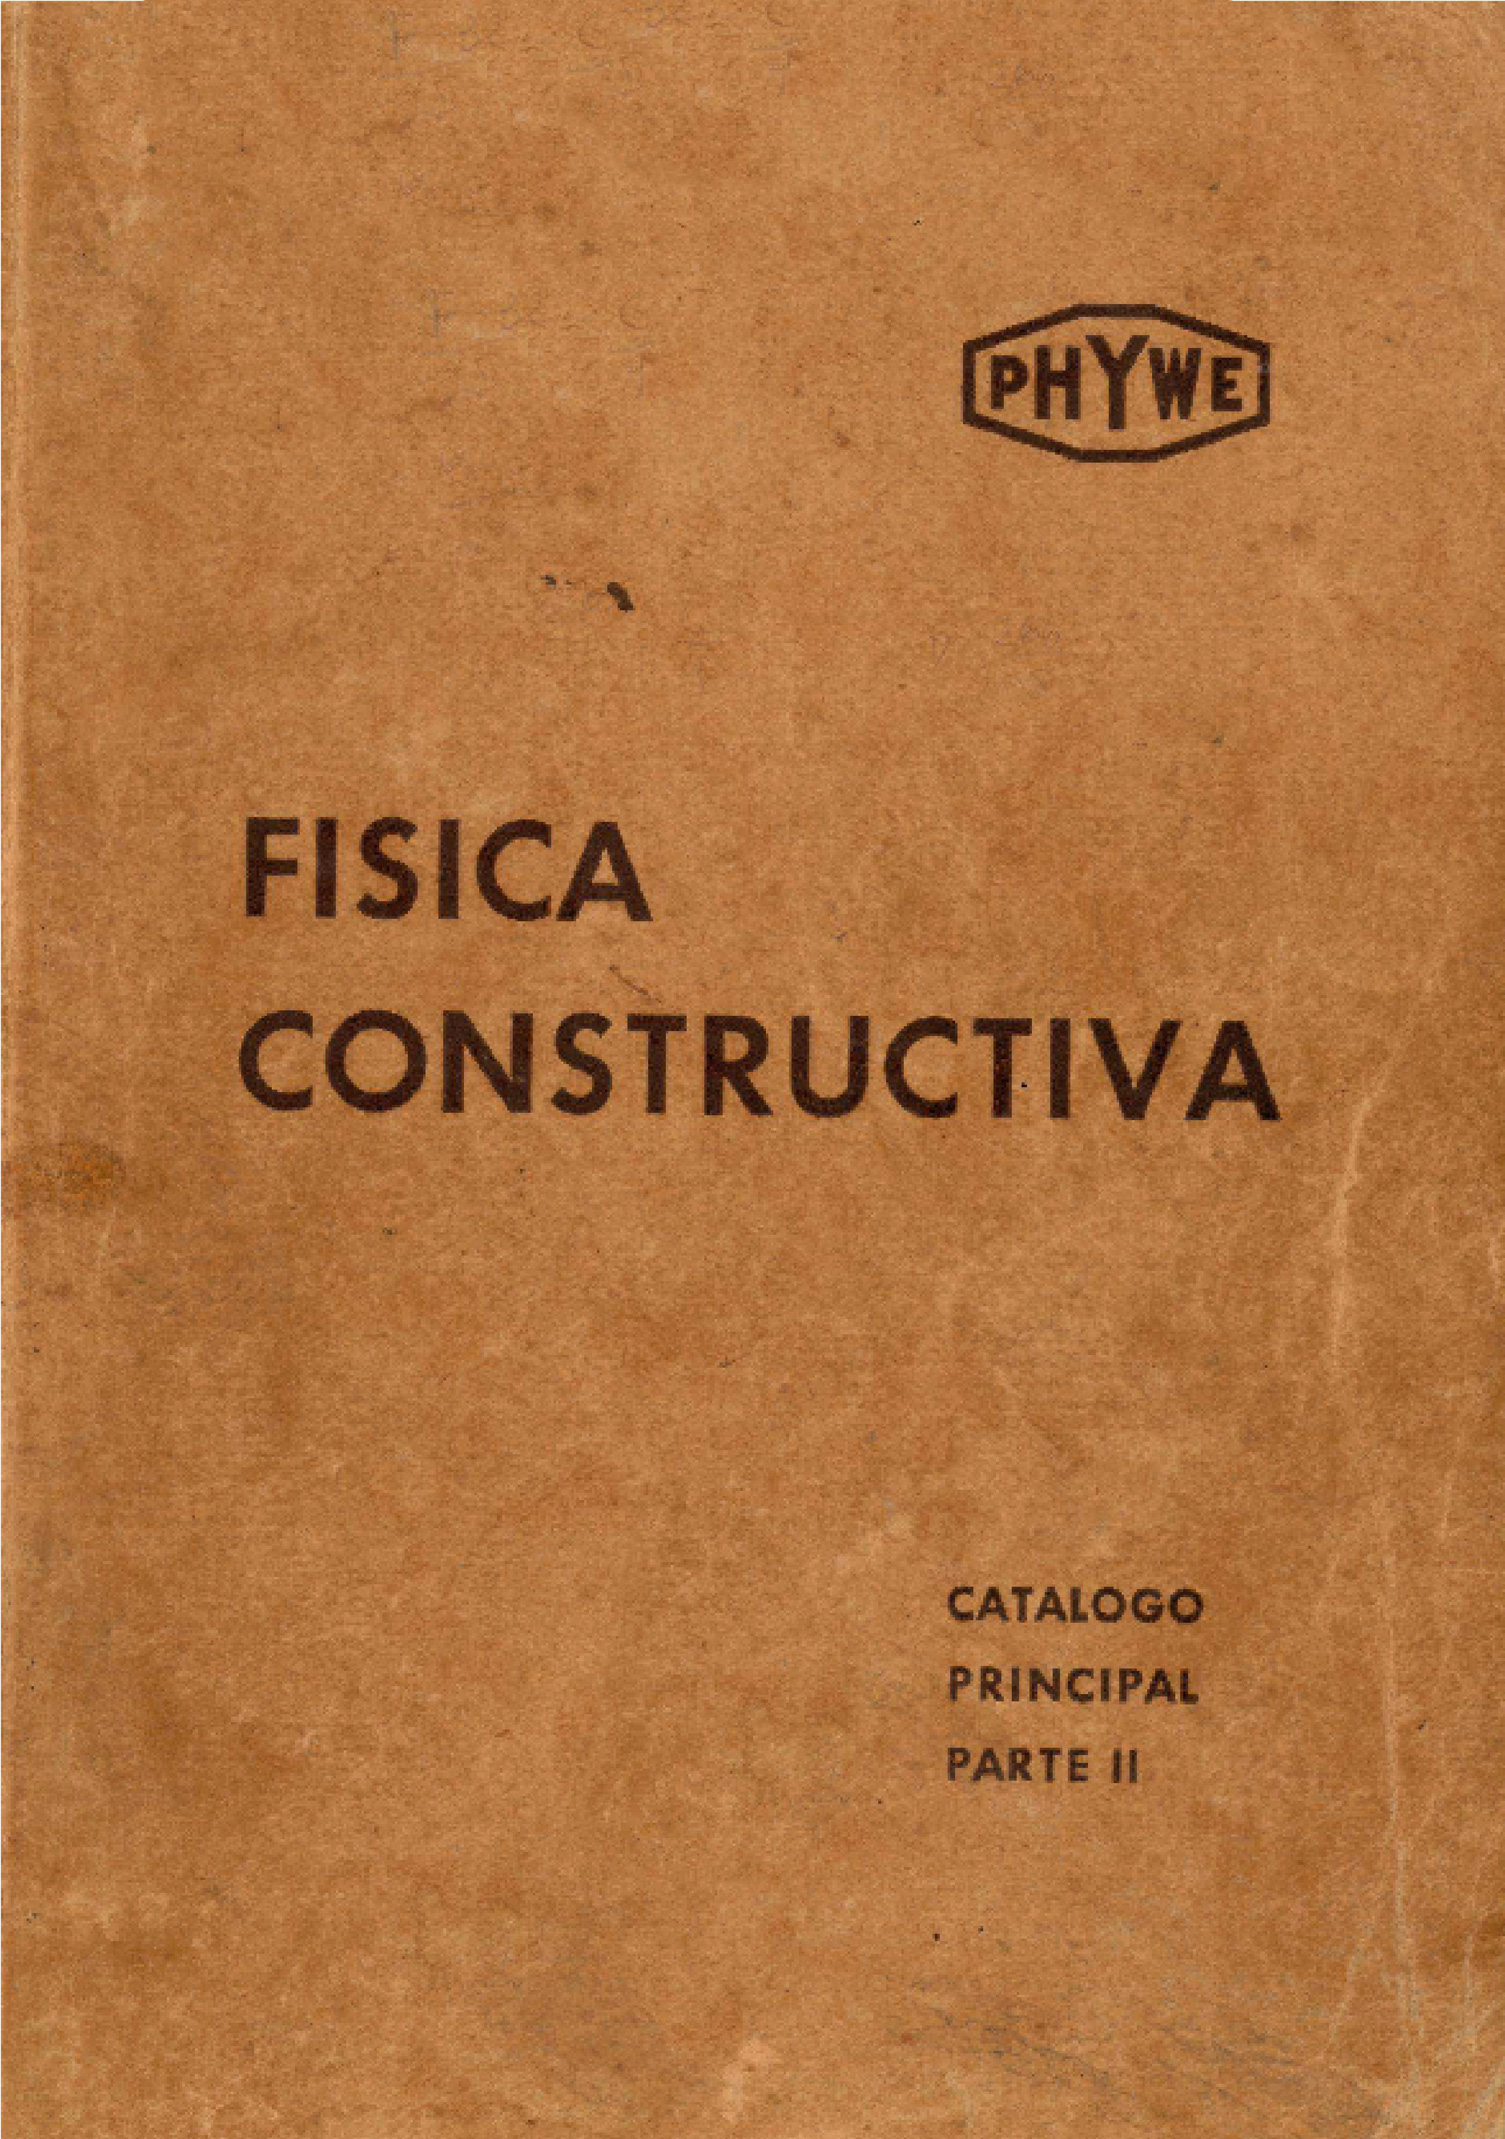 imagem do catálogo PHYWE - FISICA CONSTRUCTIVA